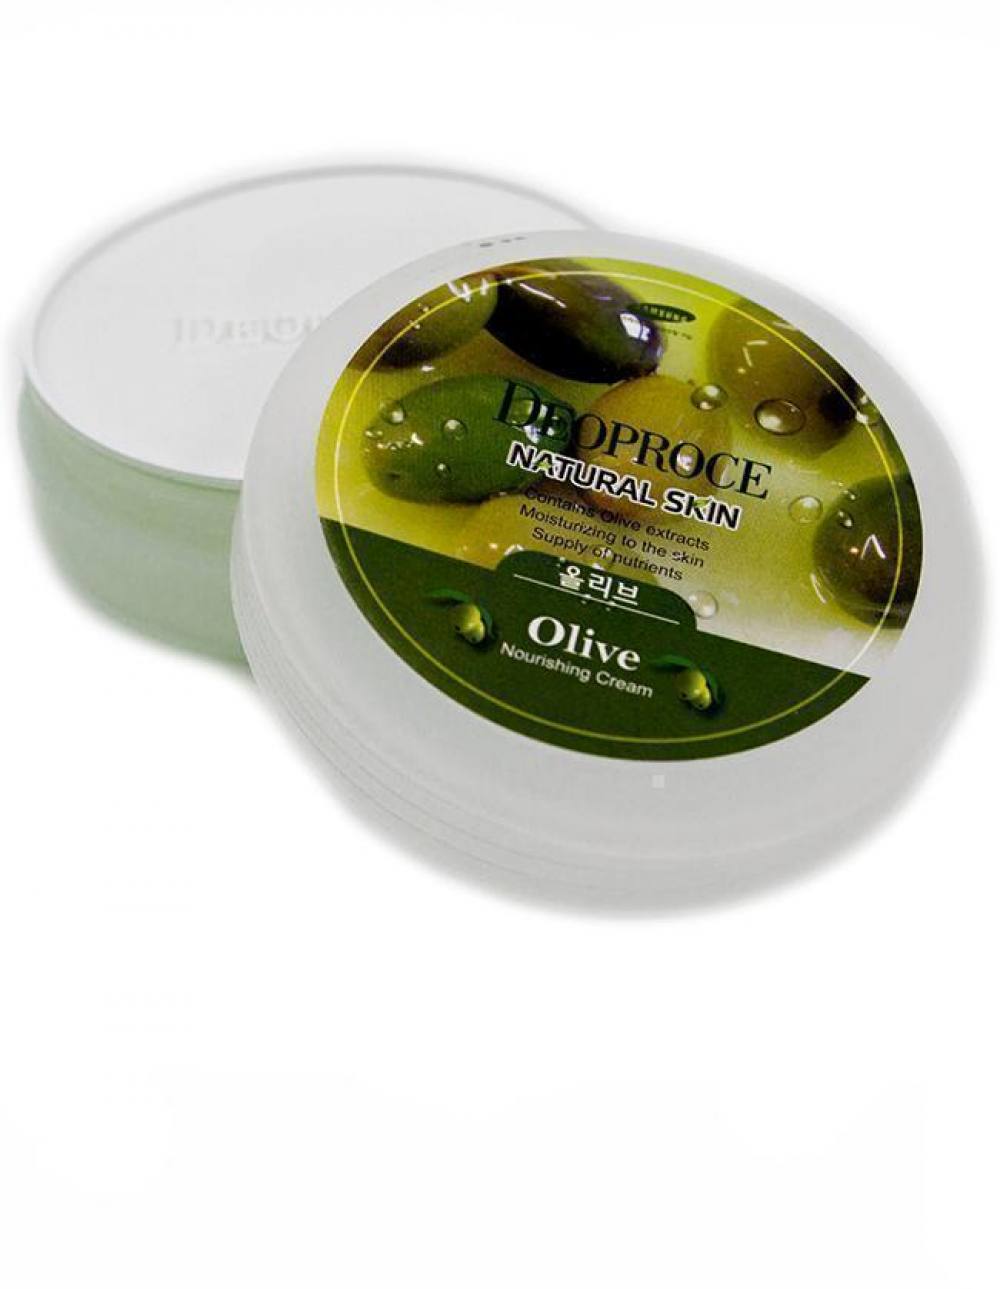 Крем для лица и тела на основе экстракта оливы Deoproce Natural Skin Olive Nourishing Cream. Артикул 082300027